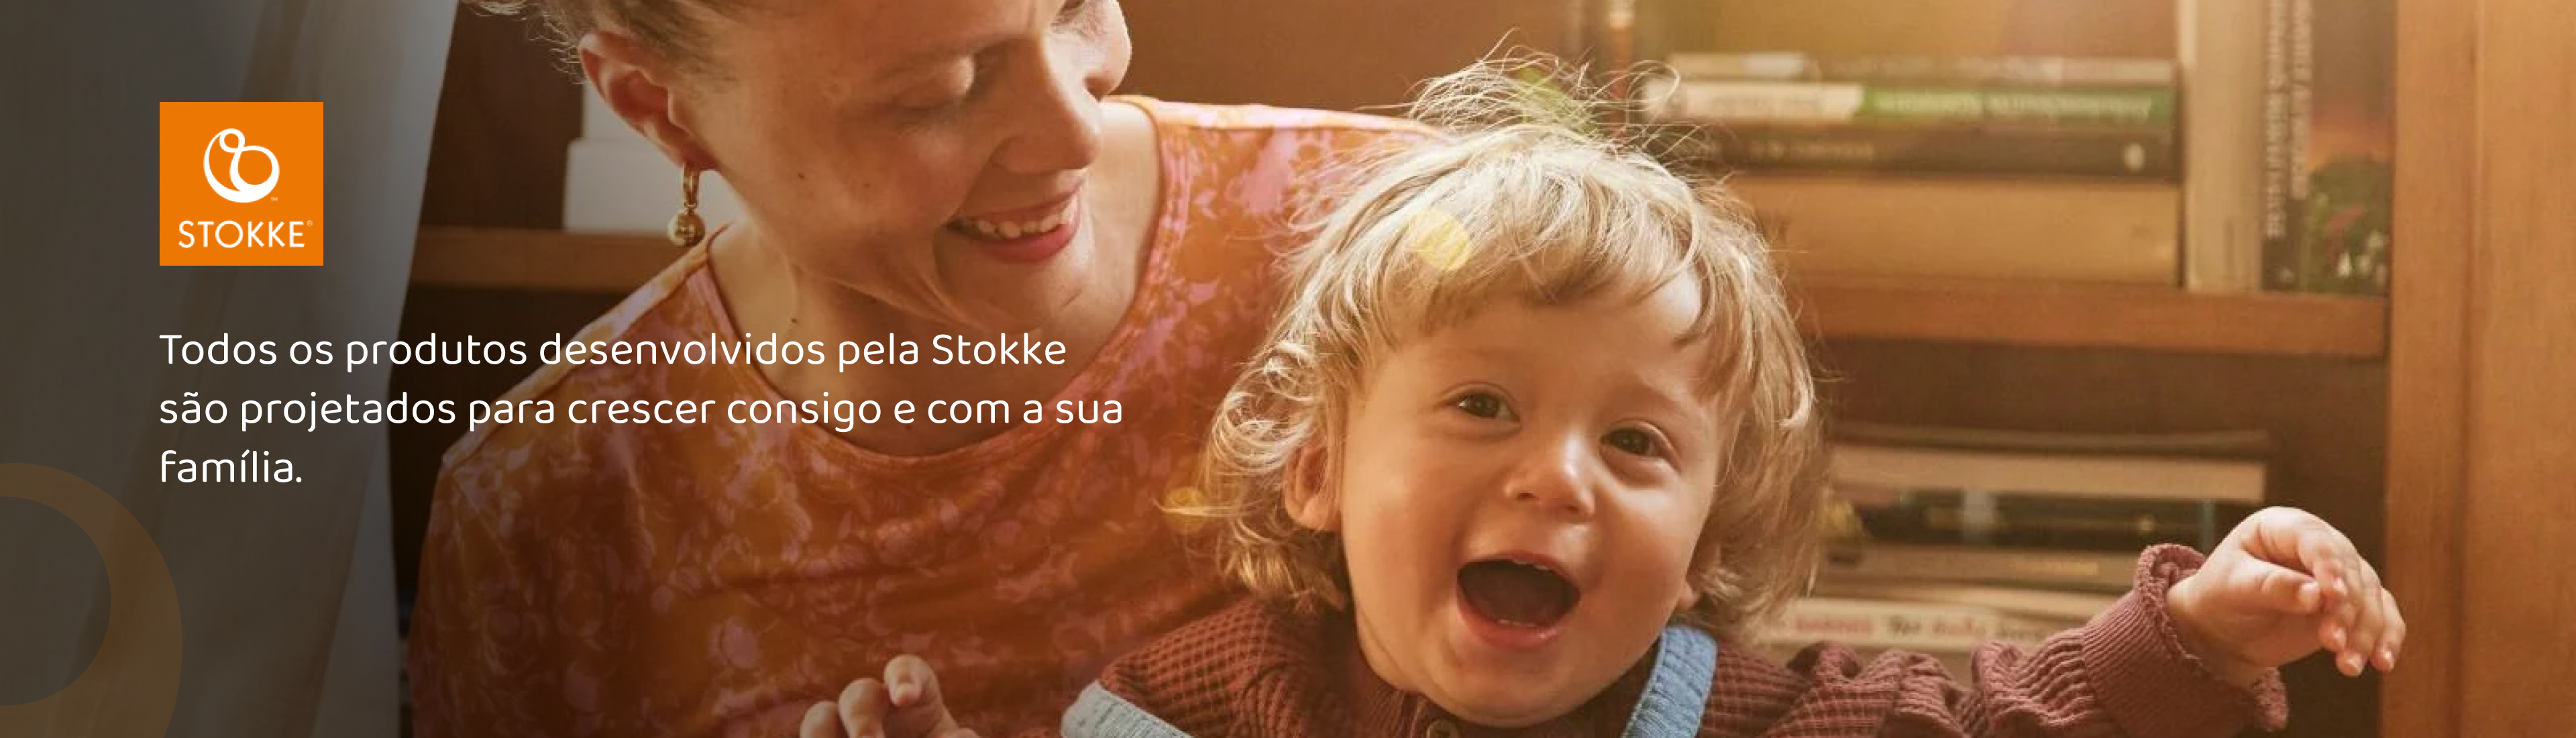 Stokke produtos | Feita para durar | Cresce com a sua família